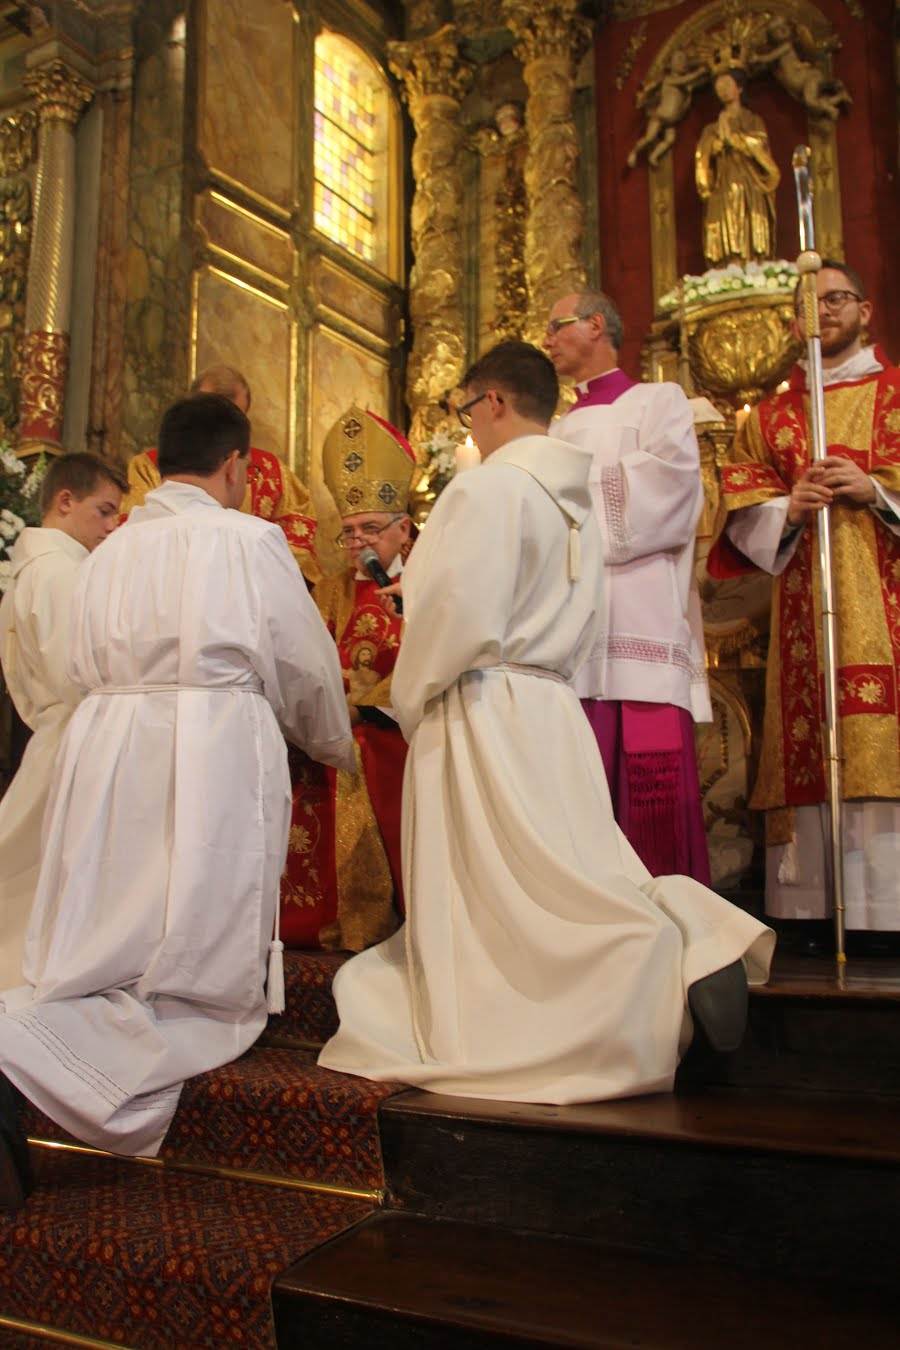 Après avoir déclarer leur intention de recevoir librement ce ministère de l'Eglise, les ordinands placent leur mains jointes dans celle de l'évêque en signe d'obéissance